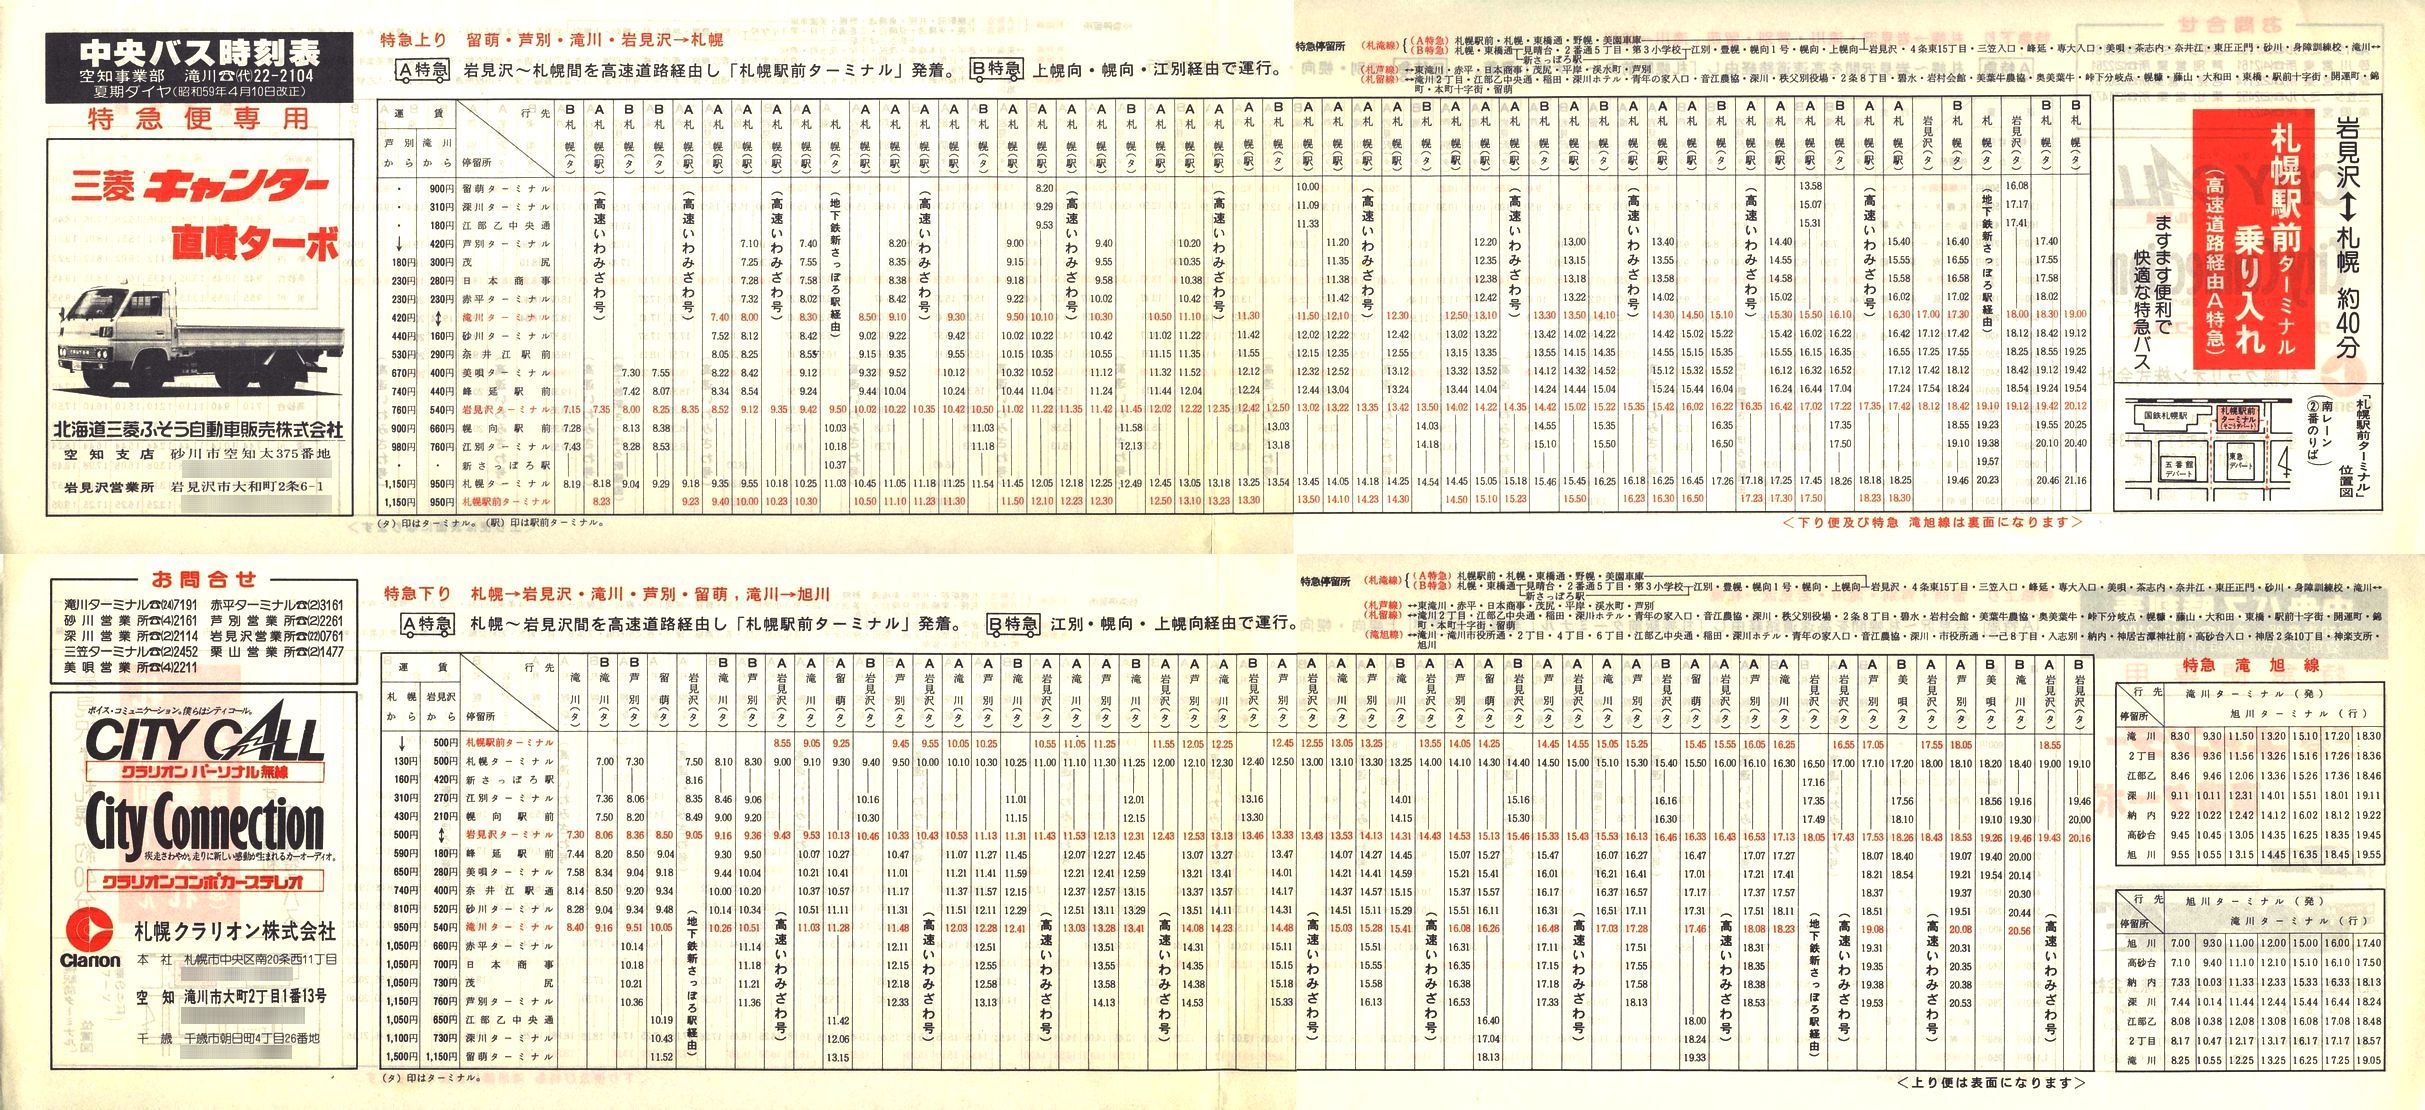 1984-04-10改正_北海道中央バス(空知)_特急便時刻表